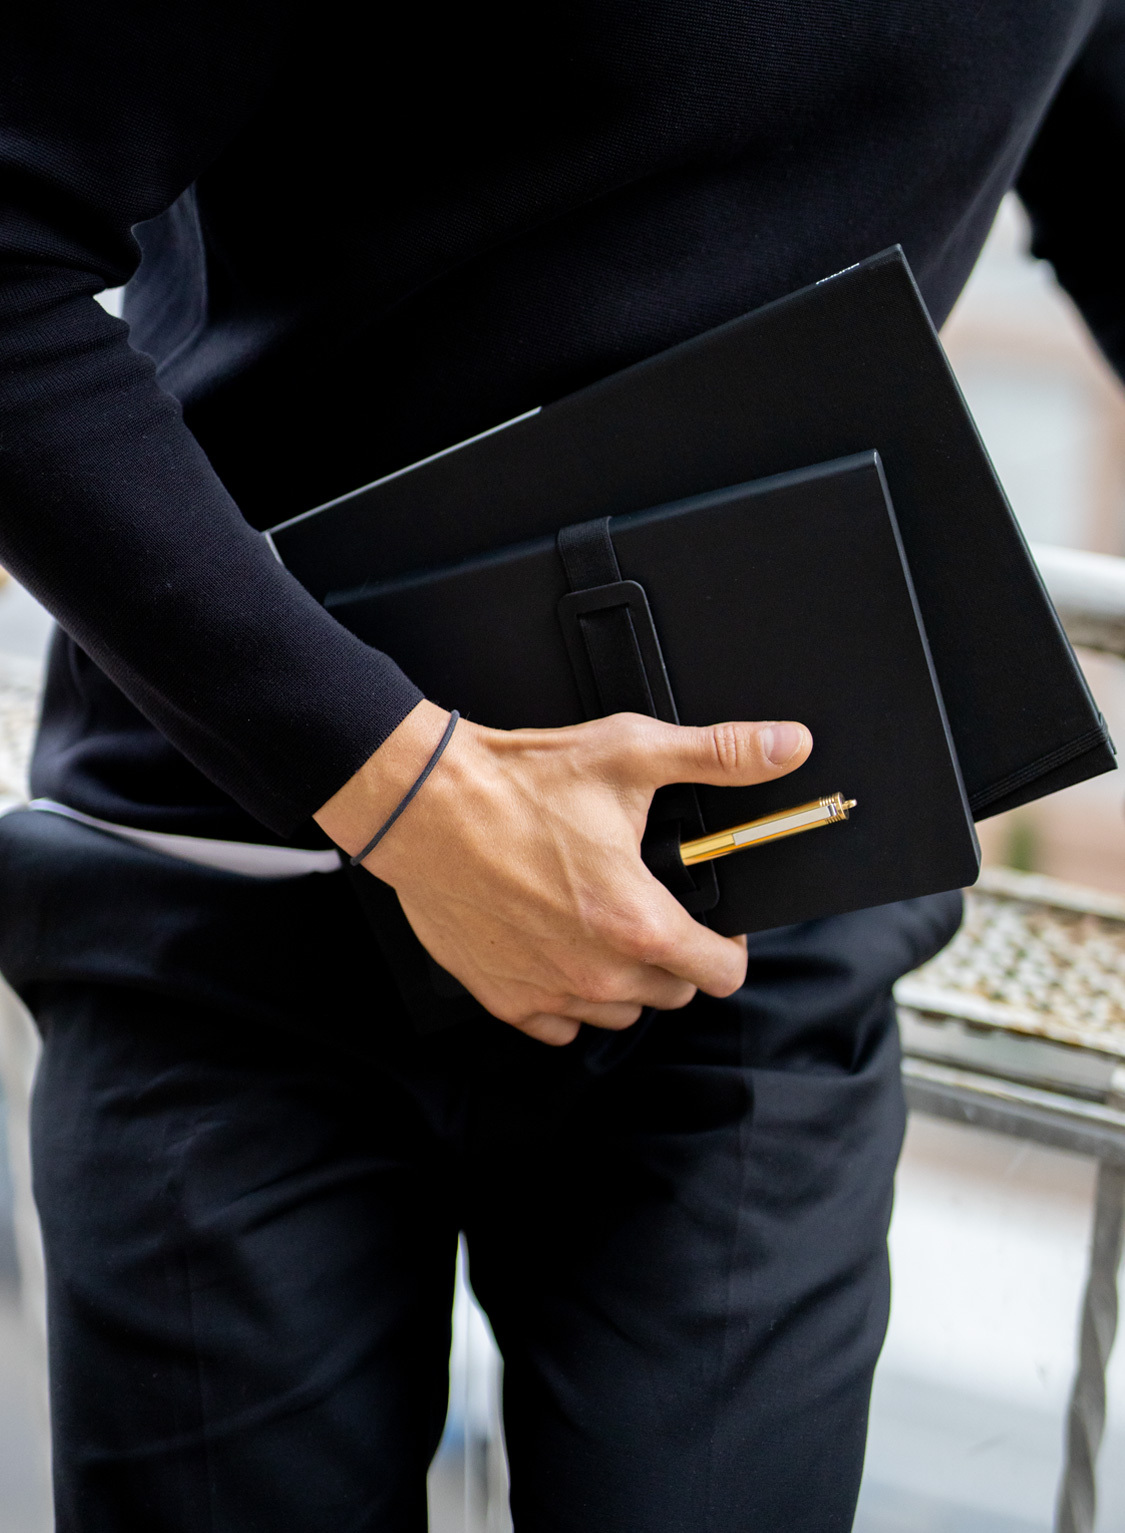 Nuuna business notizbuch schwarz minimalistisch recycletes leder nachhaltig anti handbag smartphone stift halterung